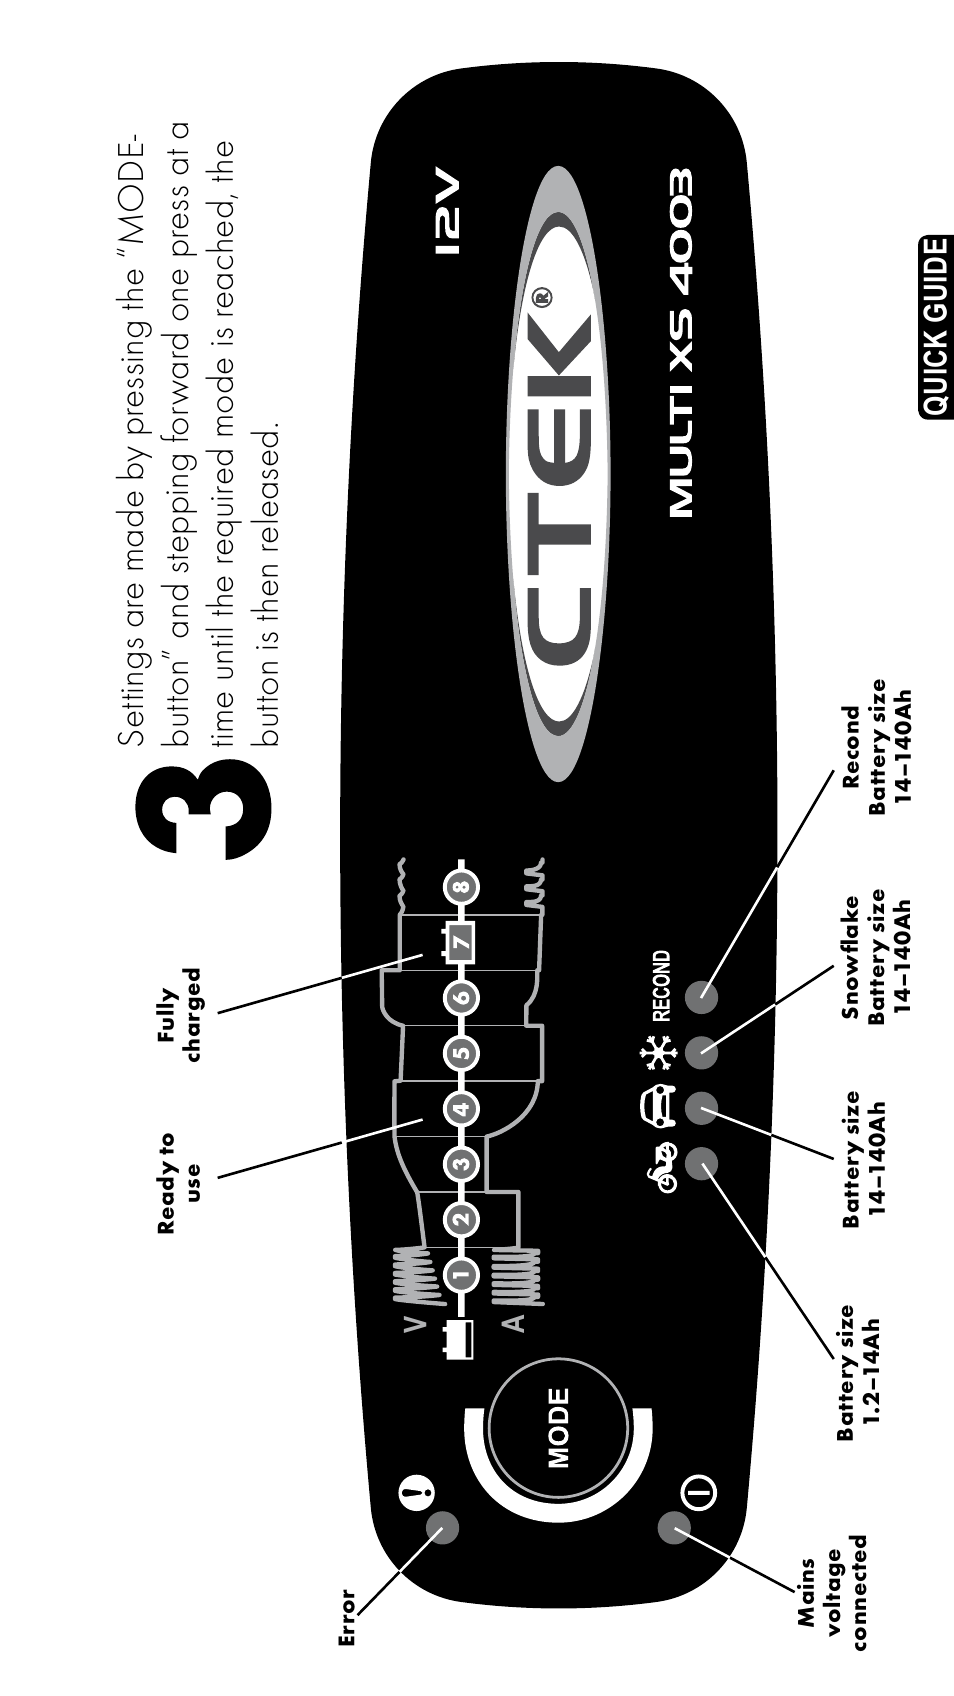 CTEK MXS 4003 User Manual | Page 3 / 12